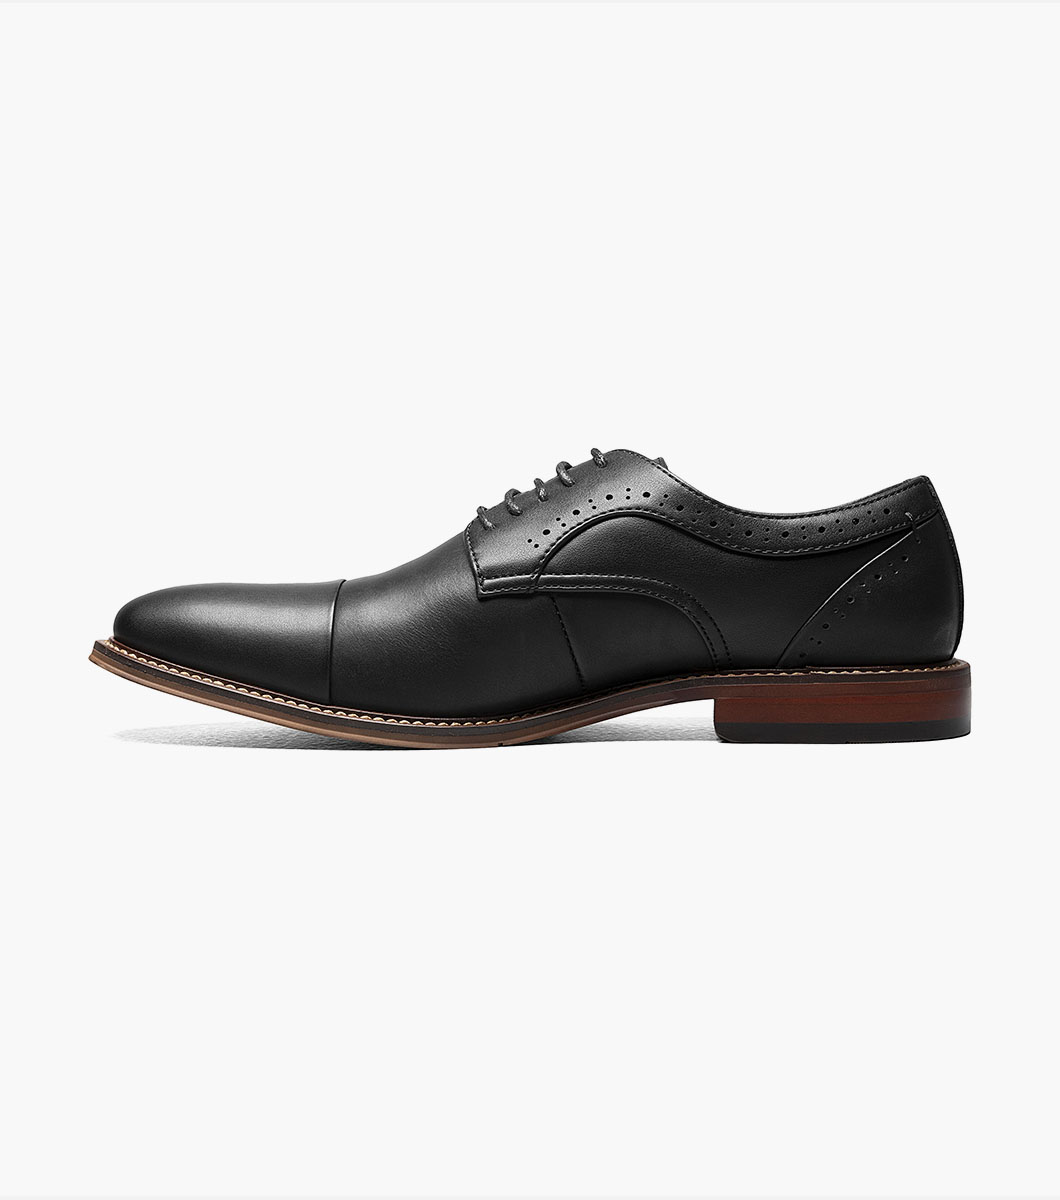 Maddox Cap Toe Oxford Men’s Dress Shoes | Stacyadams.com